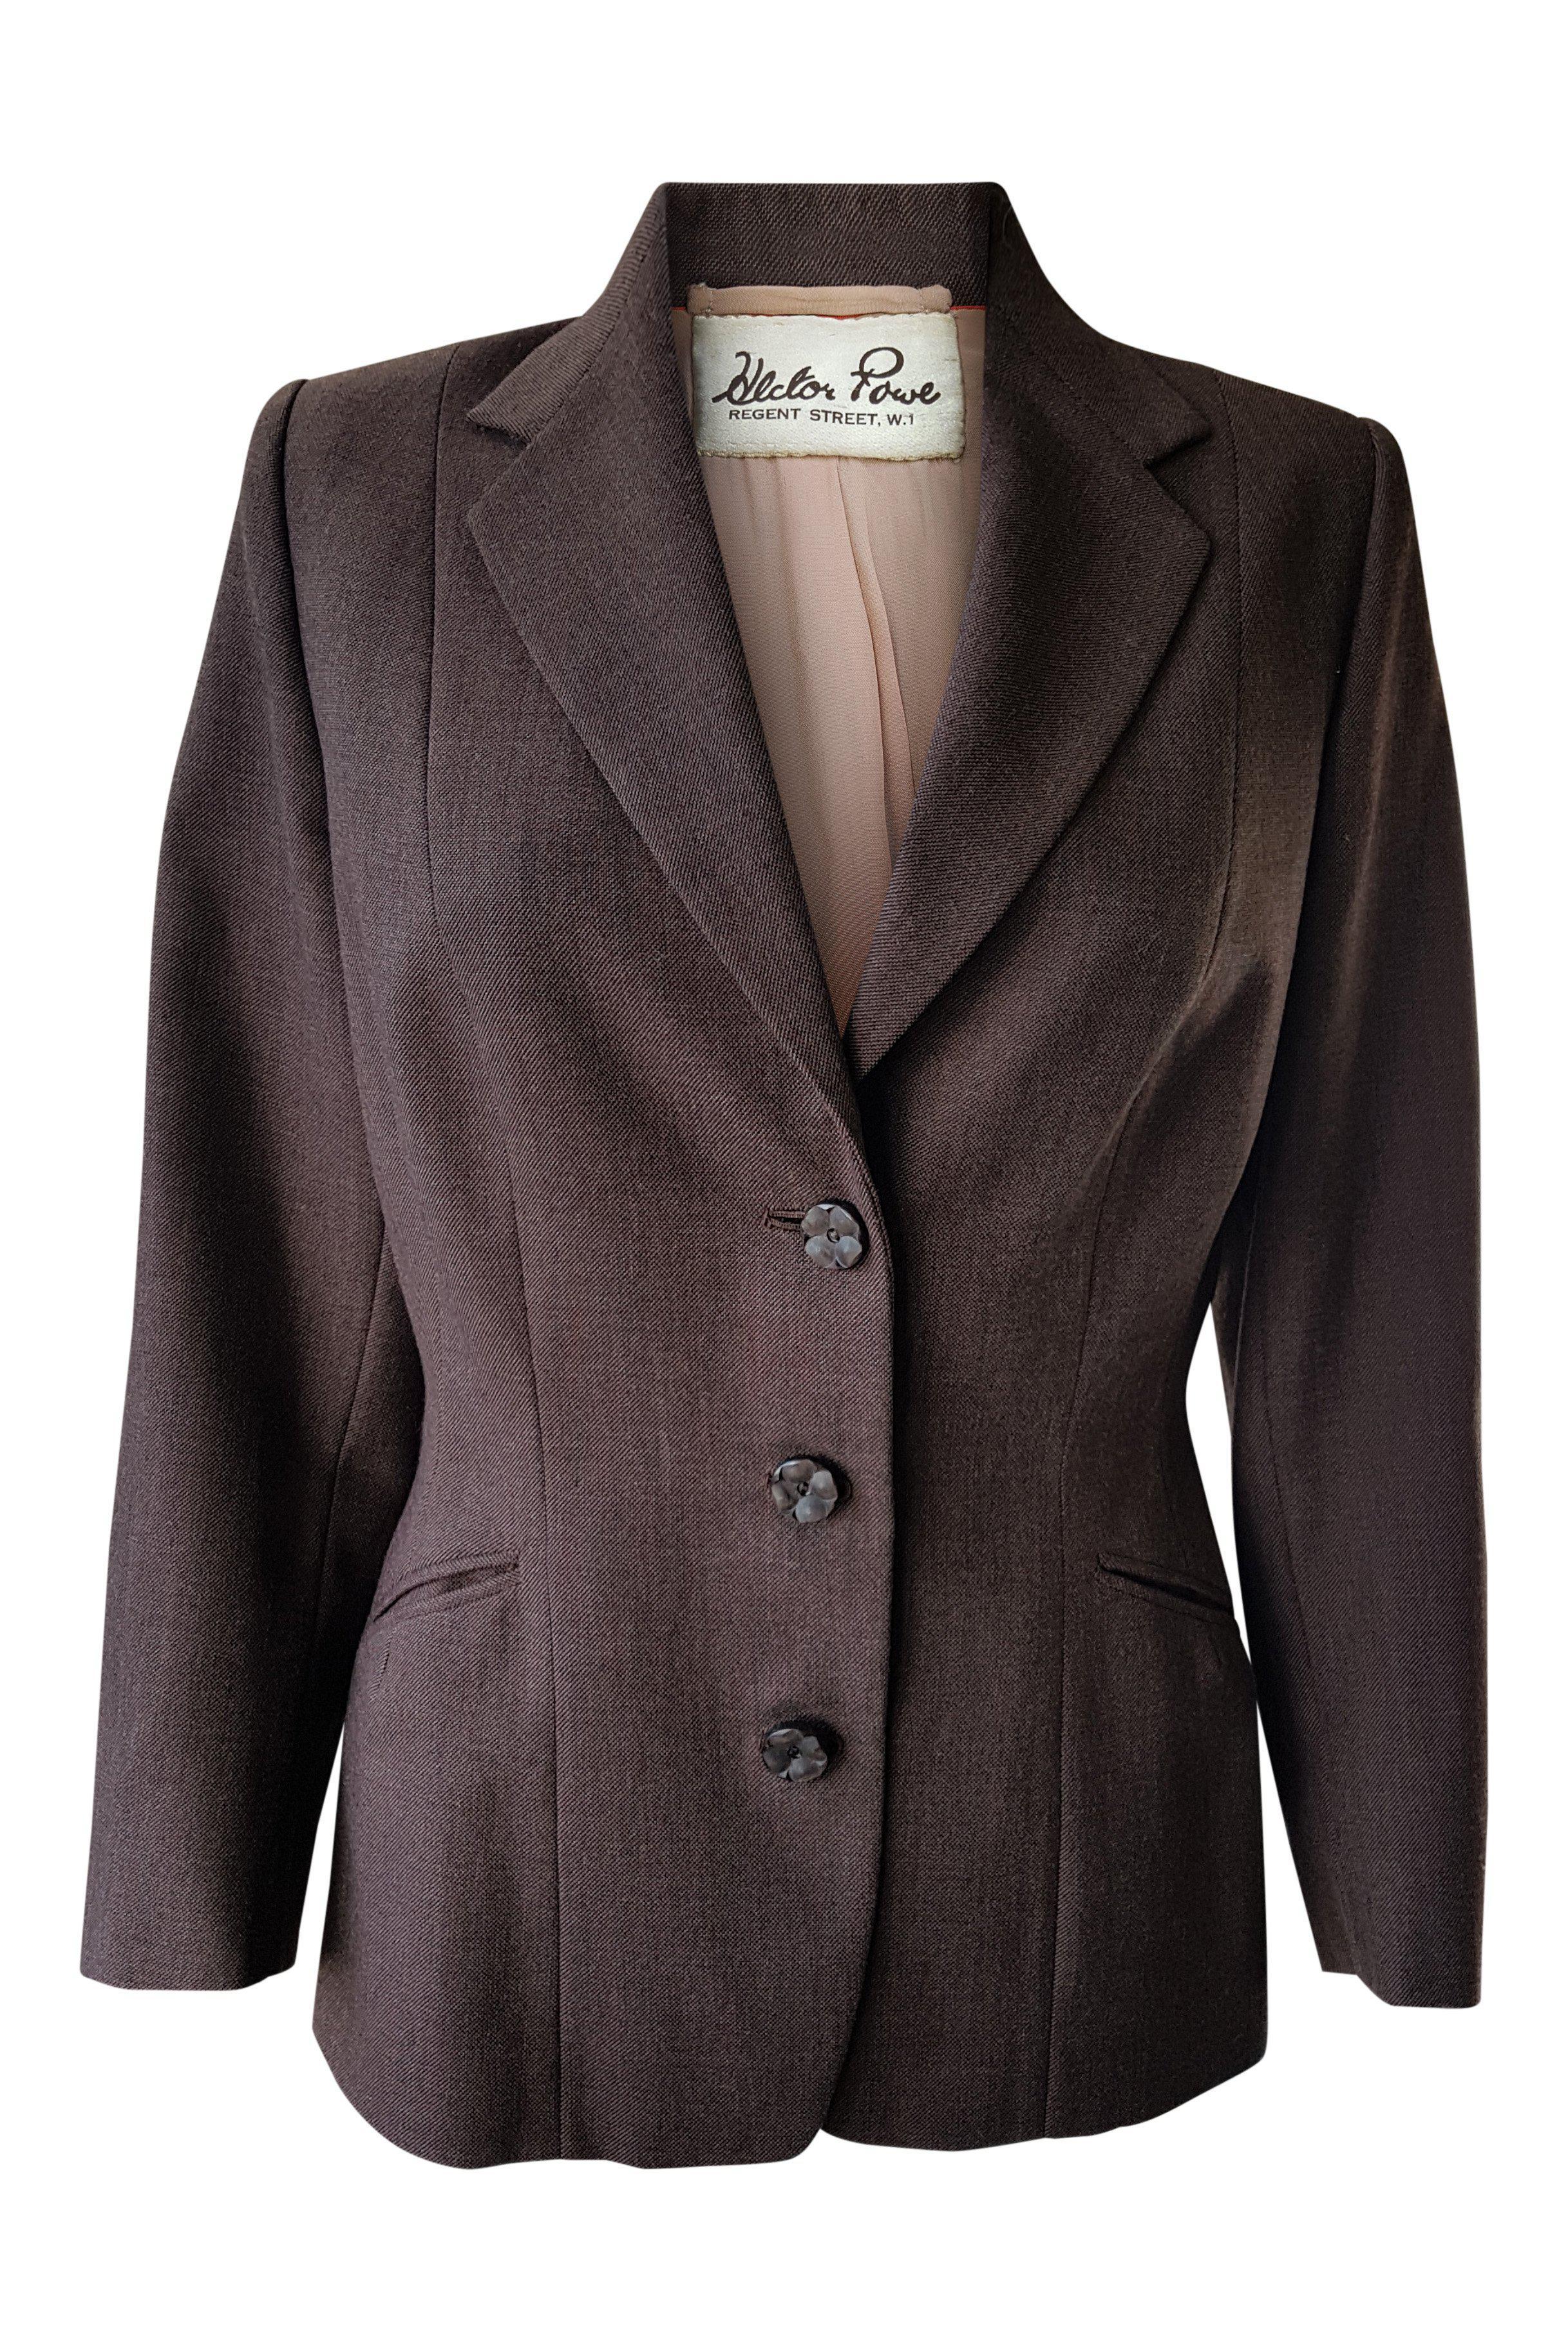 HECTOR POWE of Regent Street Vintage Brown Wool Jacket (10)-Hector Powe-The Freperie